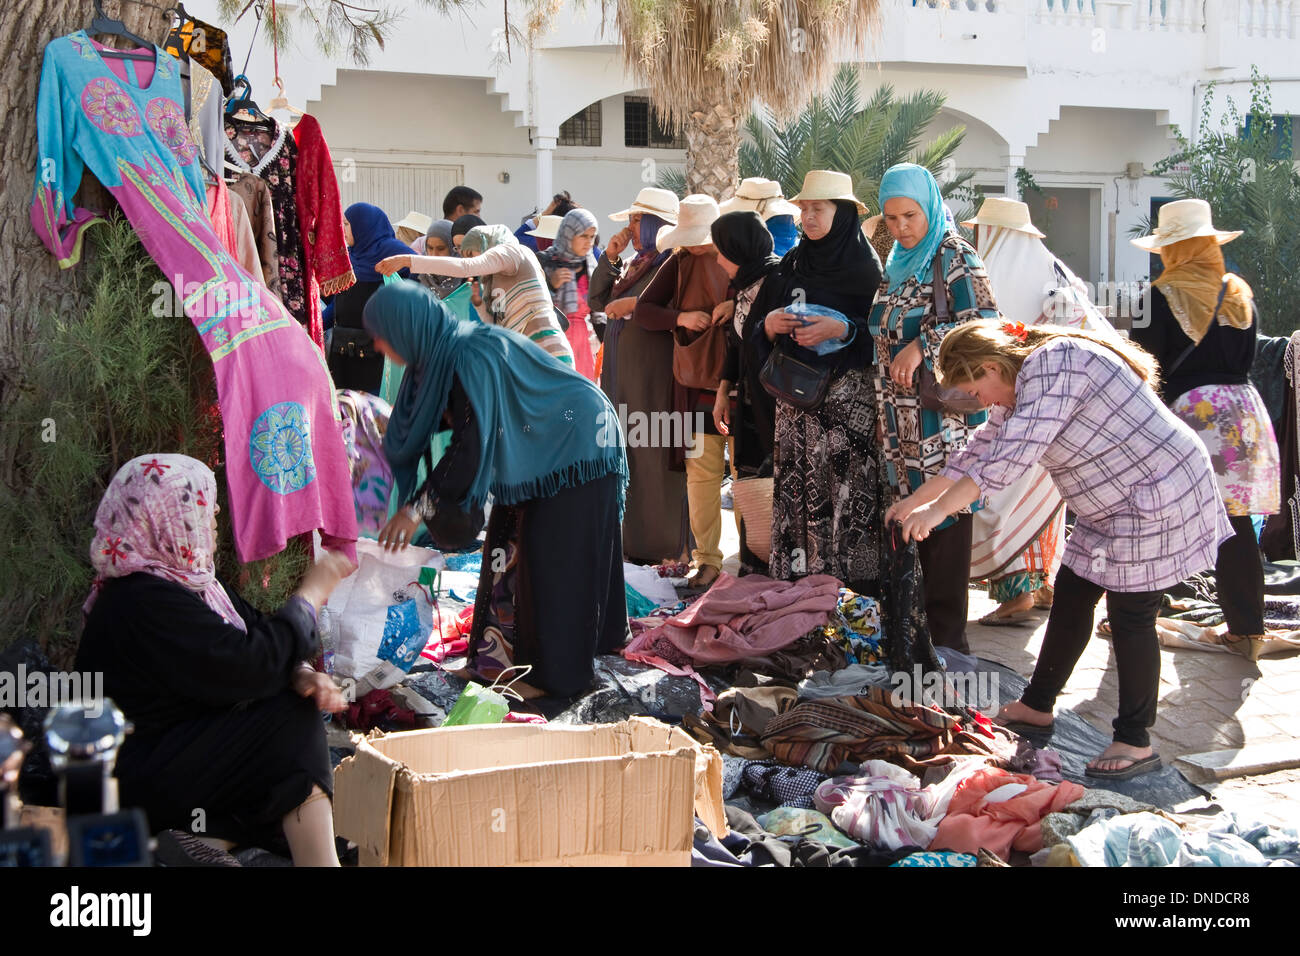 Tunesische Frauen einkaufen Kleidung auf dem lokalen Markt - Houmt Souk, Djerba Insel - Tunesien Stockfoto